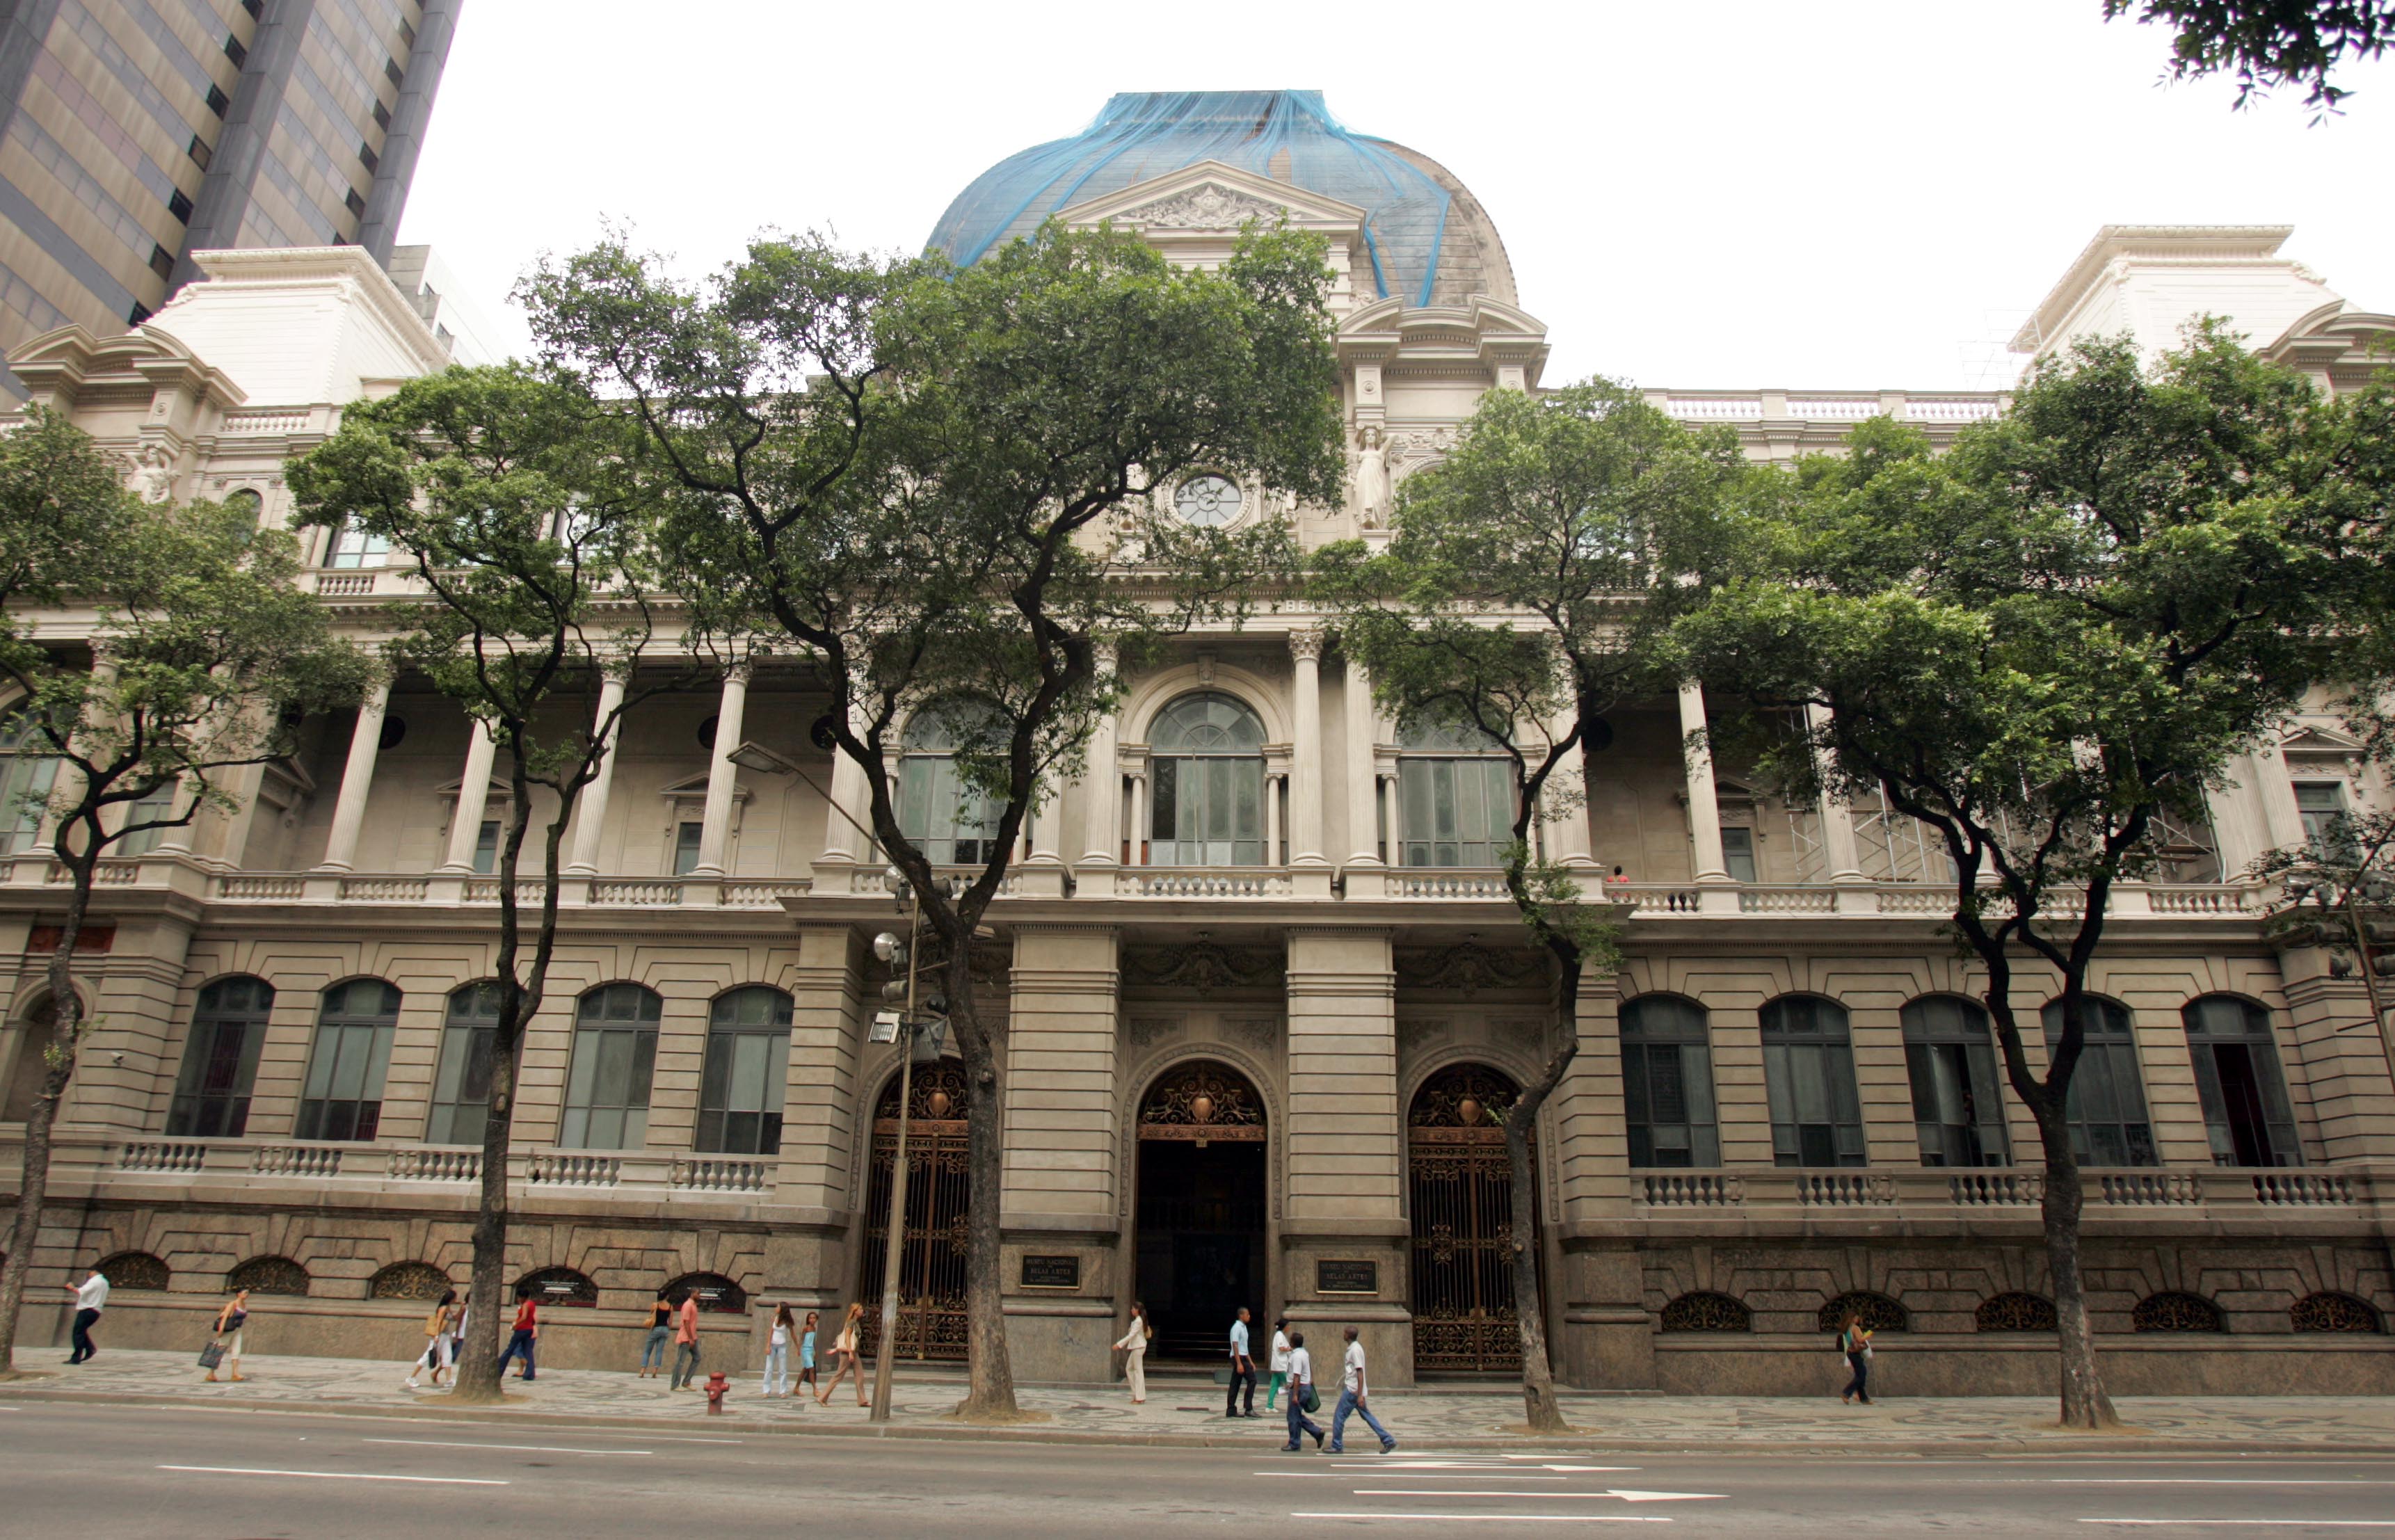 Fachadas Neoclassicas Museu Nacional de Belas Artes - Rio de Janeiro